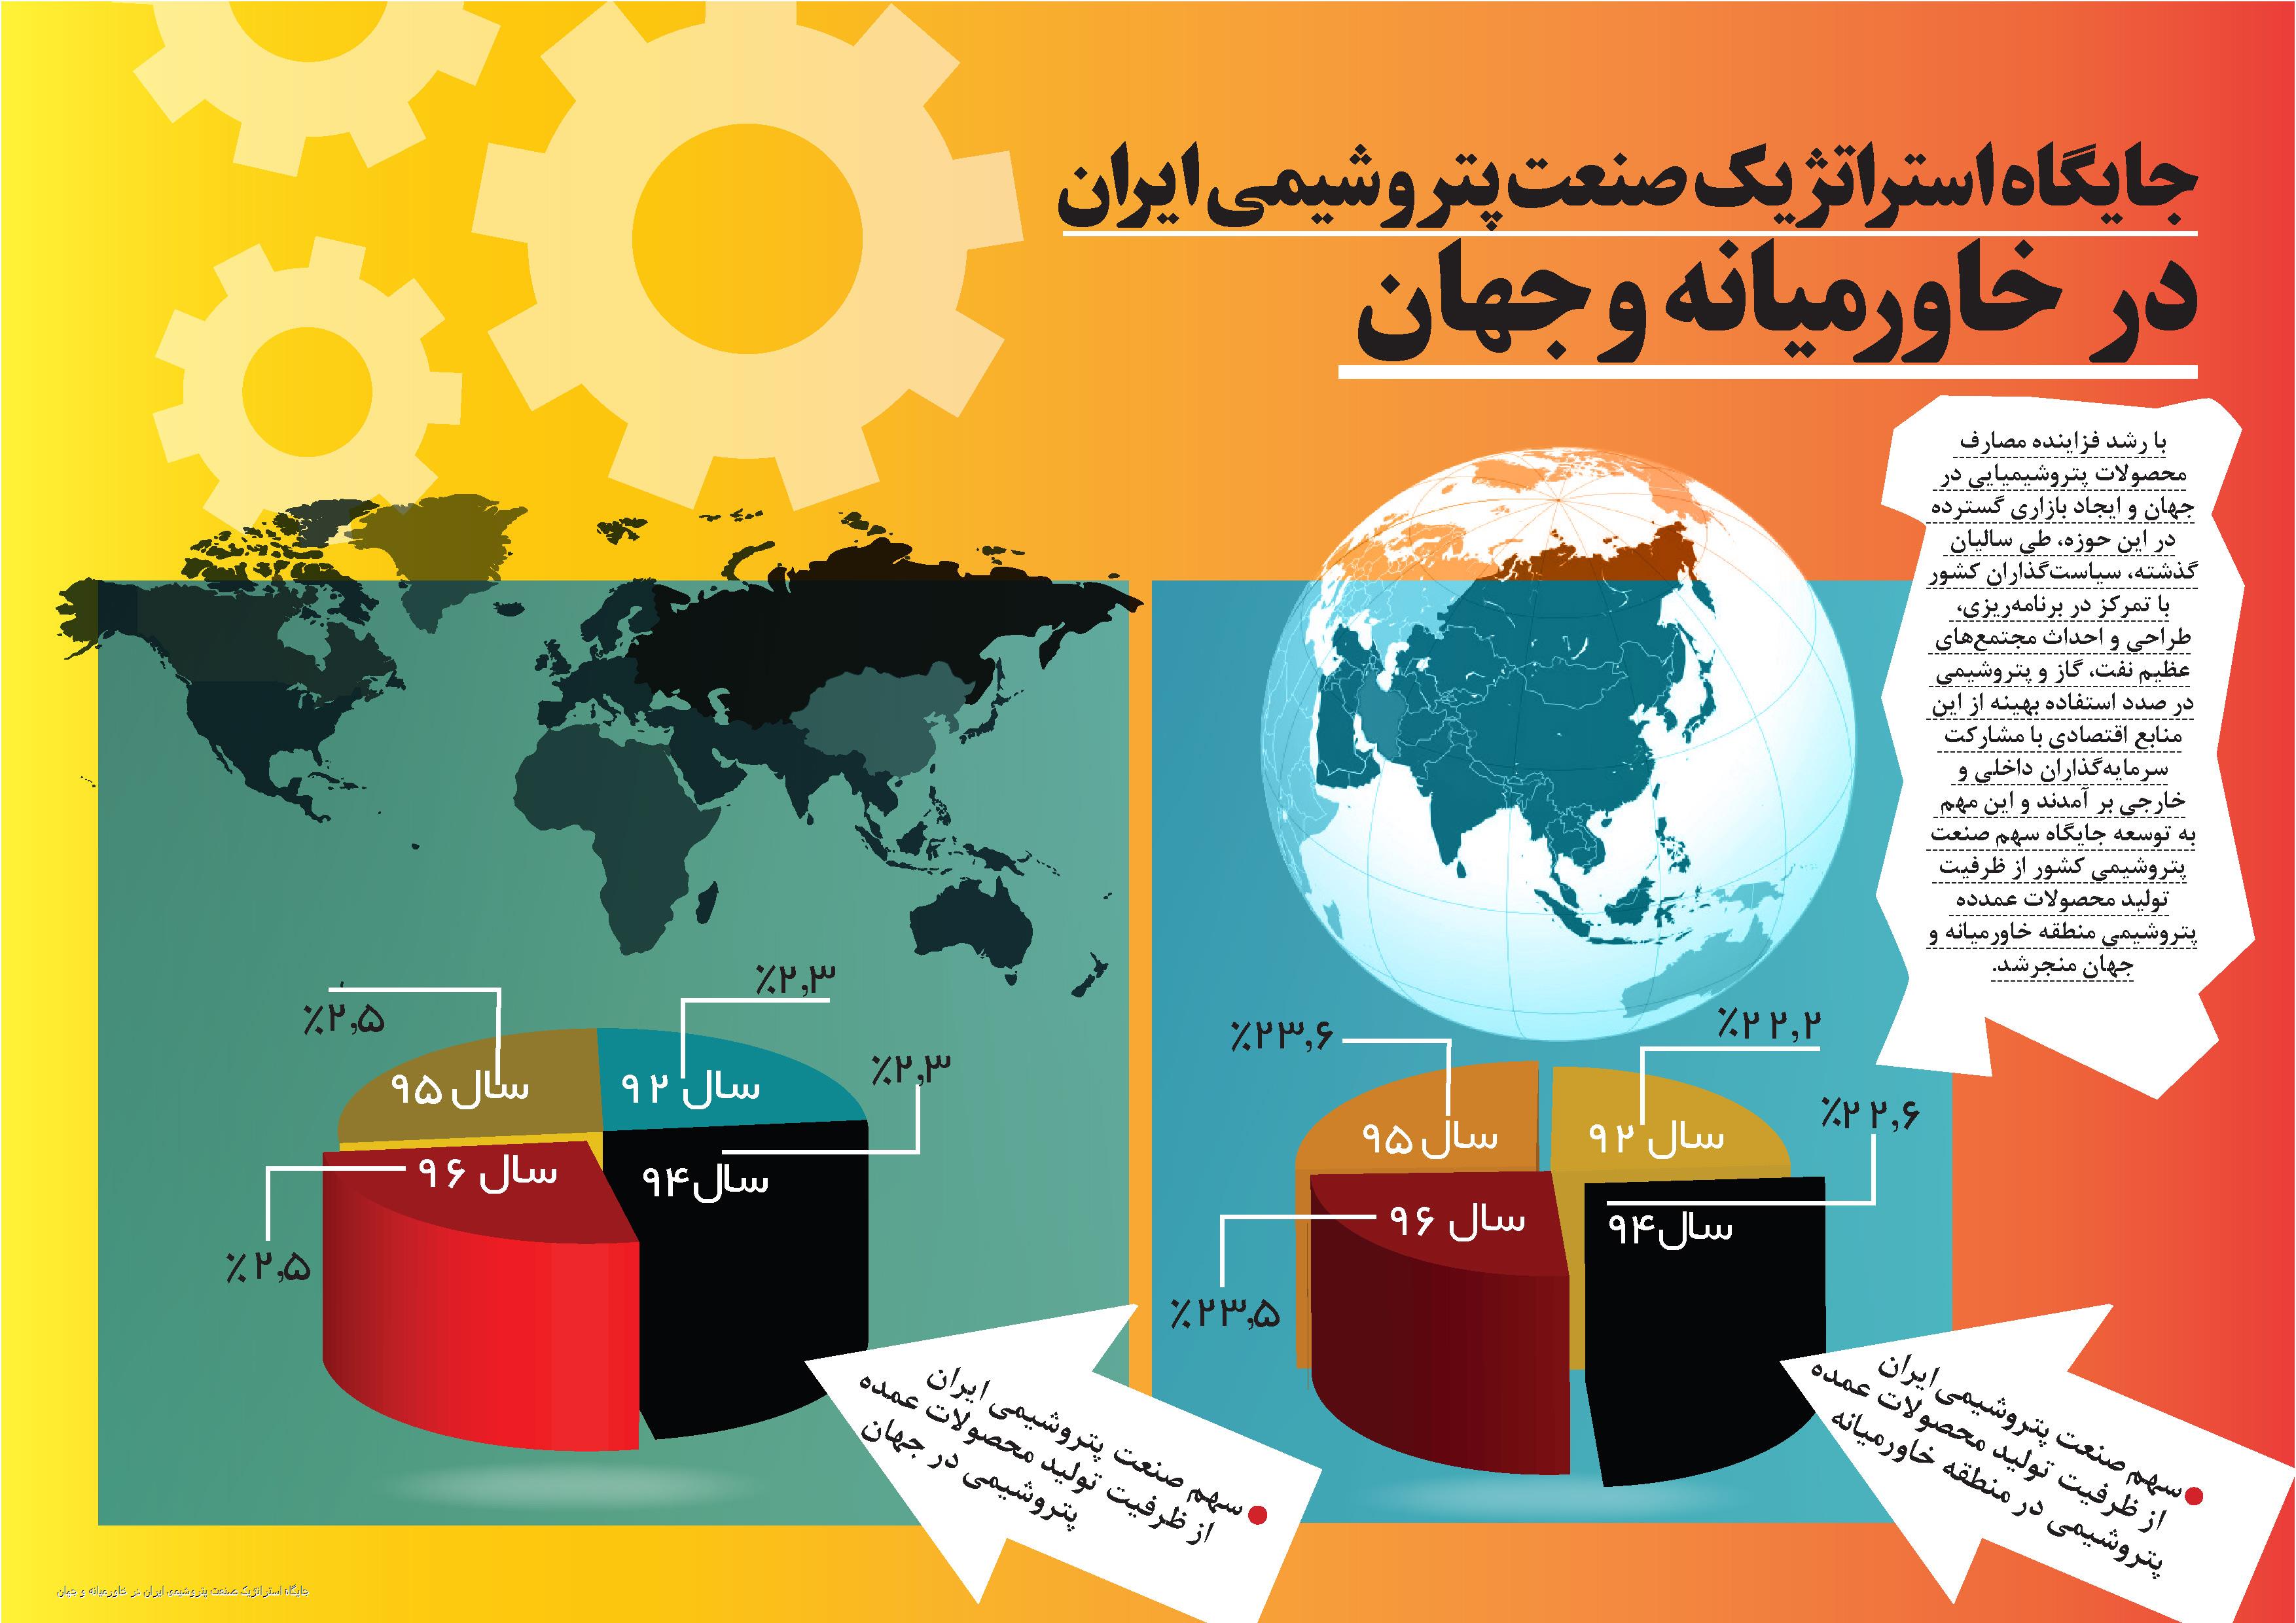 اینفوگراف | جایگاه استراتژیک صنعت پتروشیمی ایران در خاور میانه